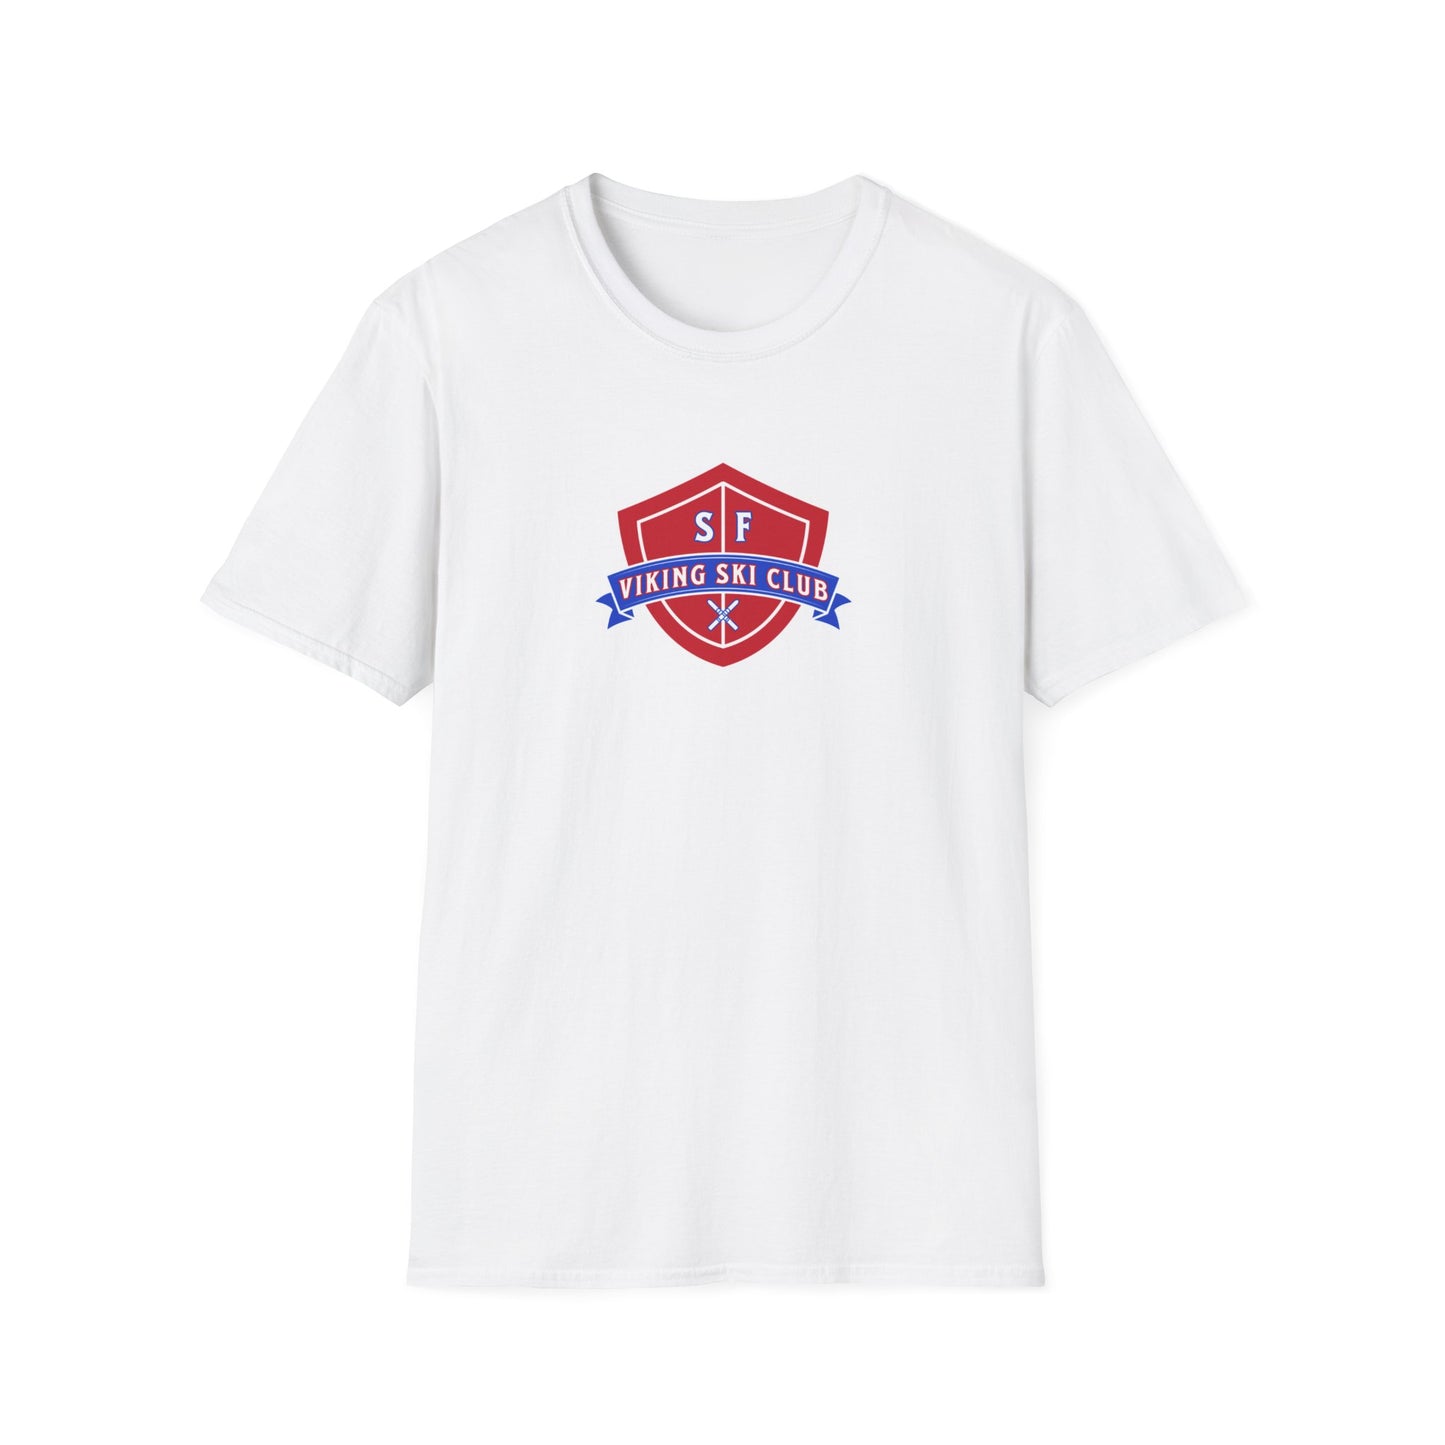 SF Viking Ski Club T-Shirt